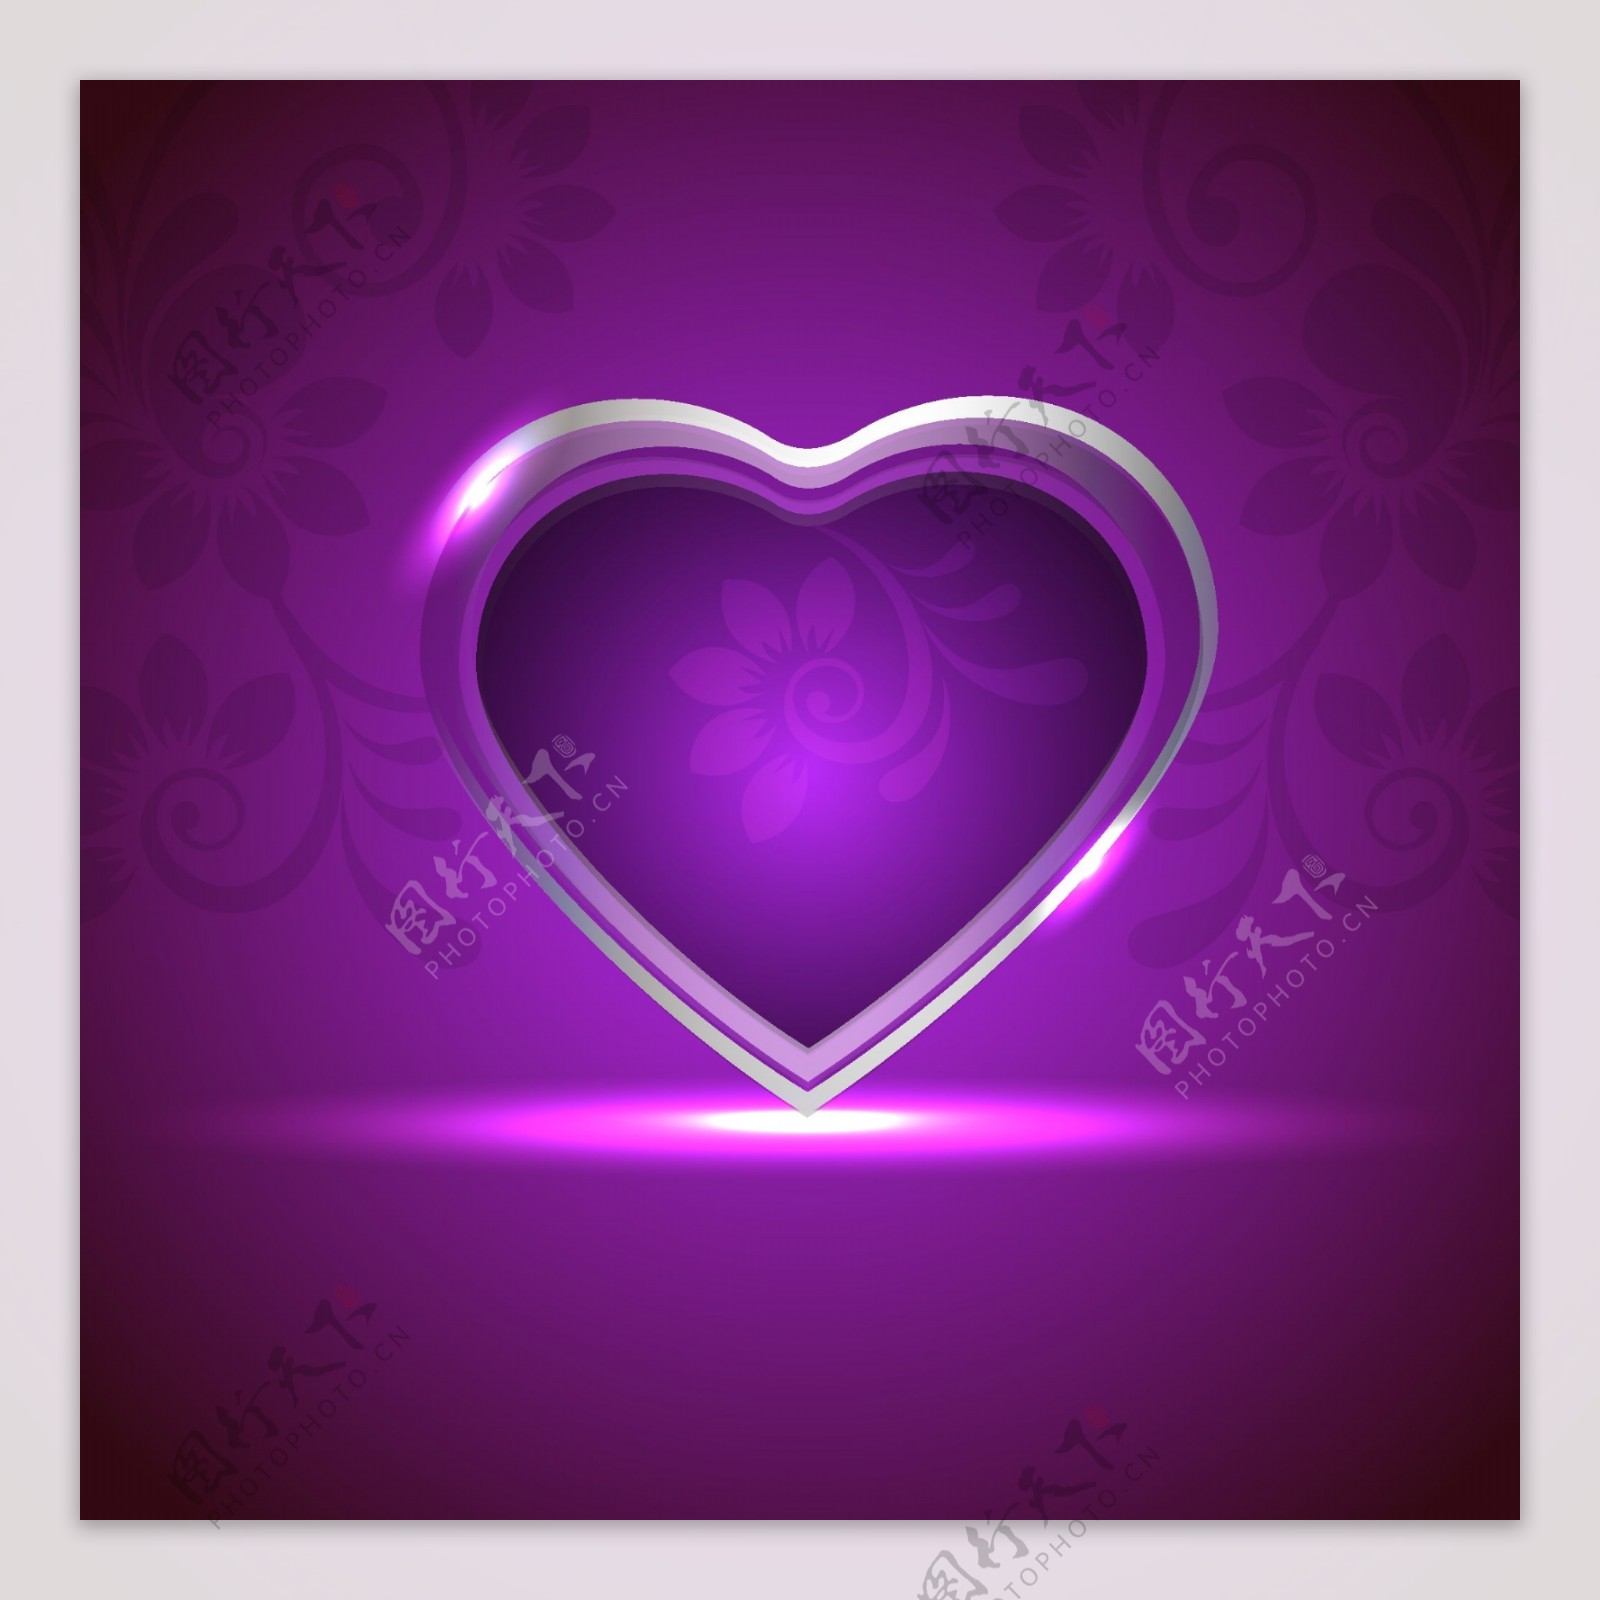 创意心形紫色背景矢量素材